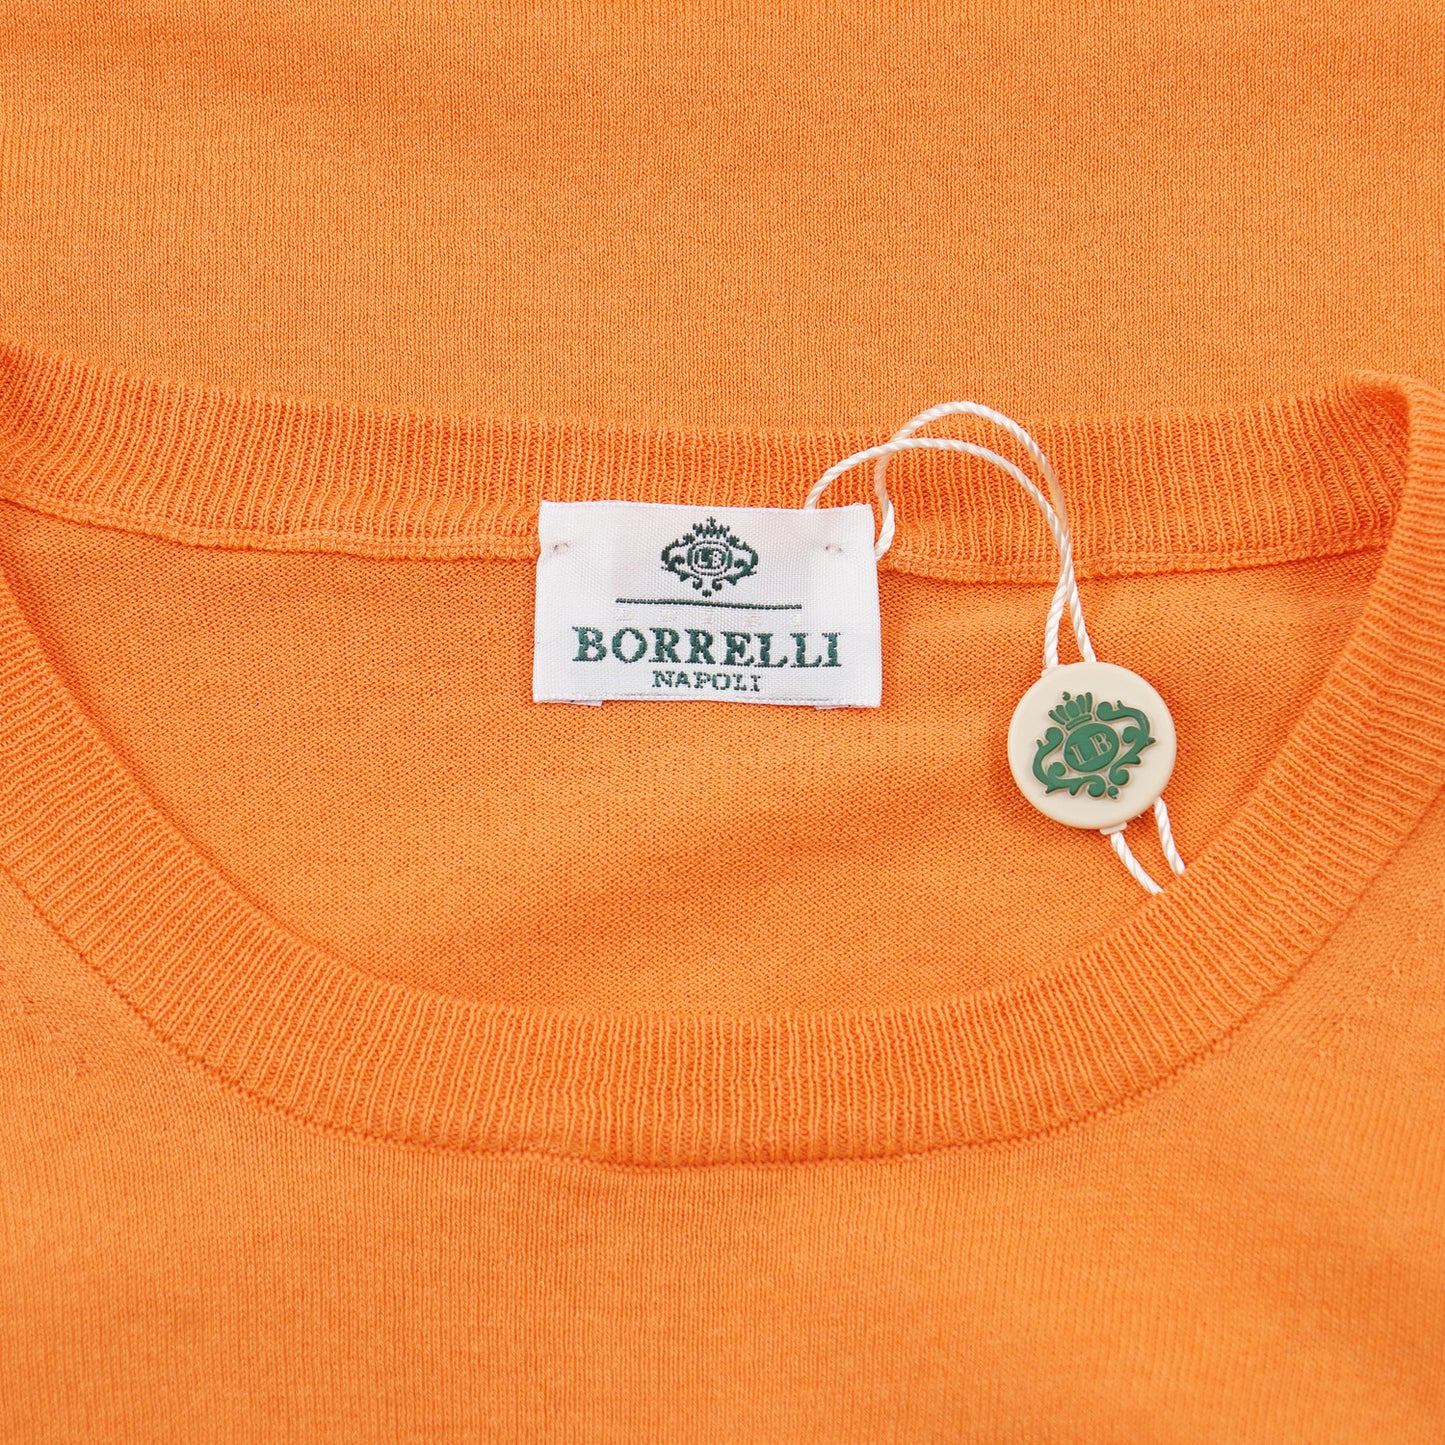 Luigi Borrelli Lightweight Cotton Sweater - Top Shelf Apparel